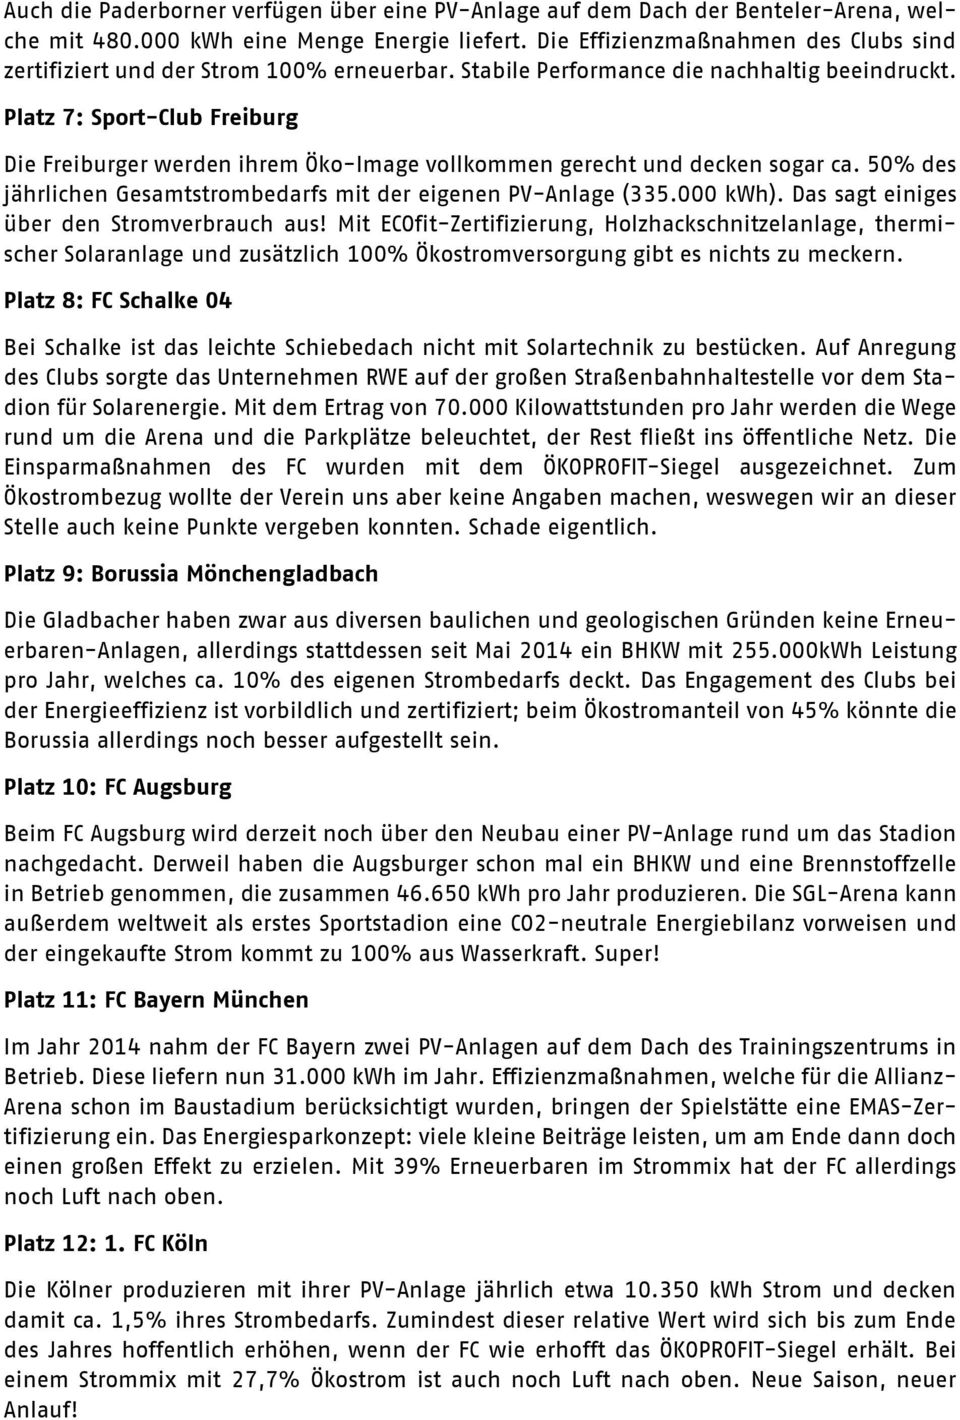 Platz 7: Sport-Club Freiburg Die Freiburger werden ihrem Öko-Image vollkommen gerecht und decken sogar ca. 50% des jährlichen Gesamtstrombedarfs mit der eigenen PV-Anlage (335.000 kwh).